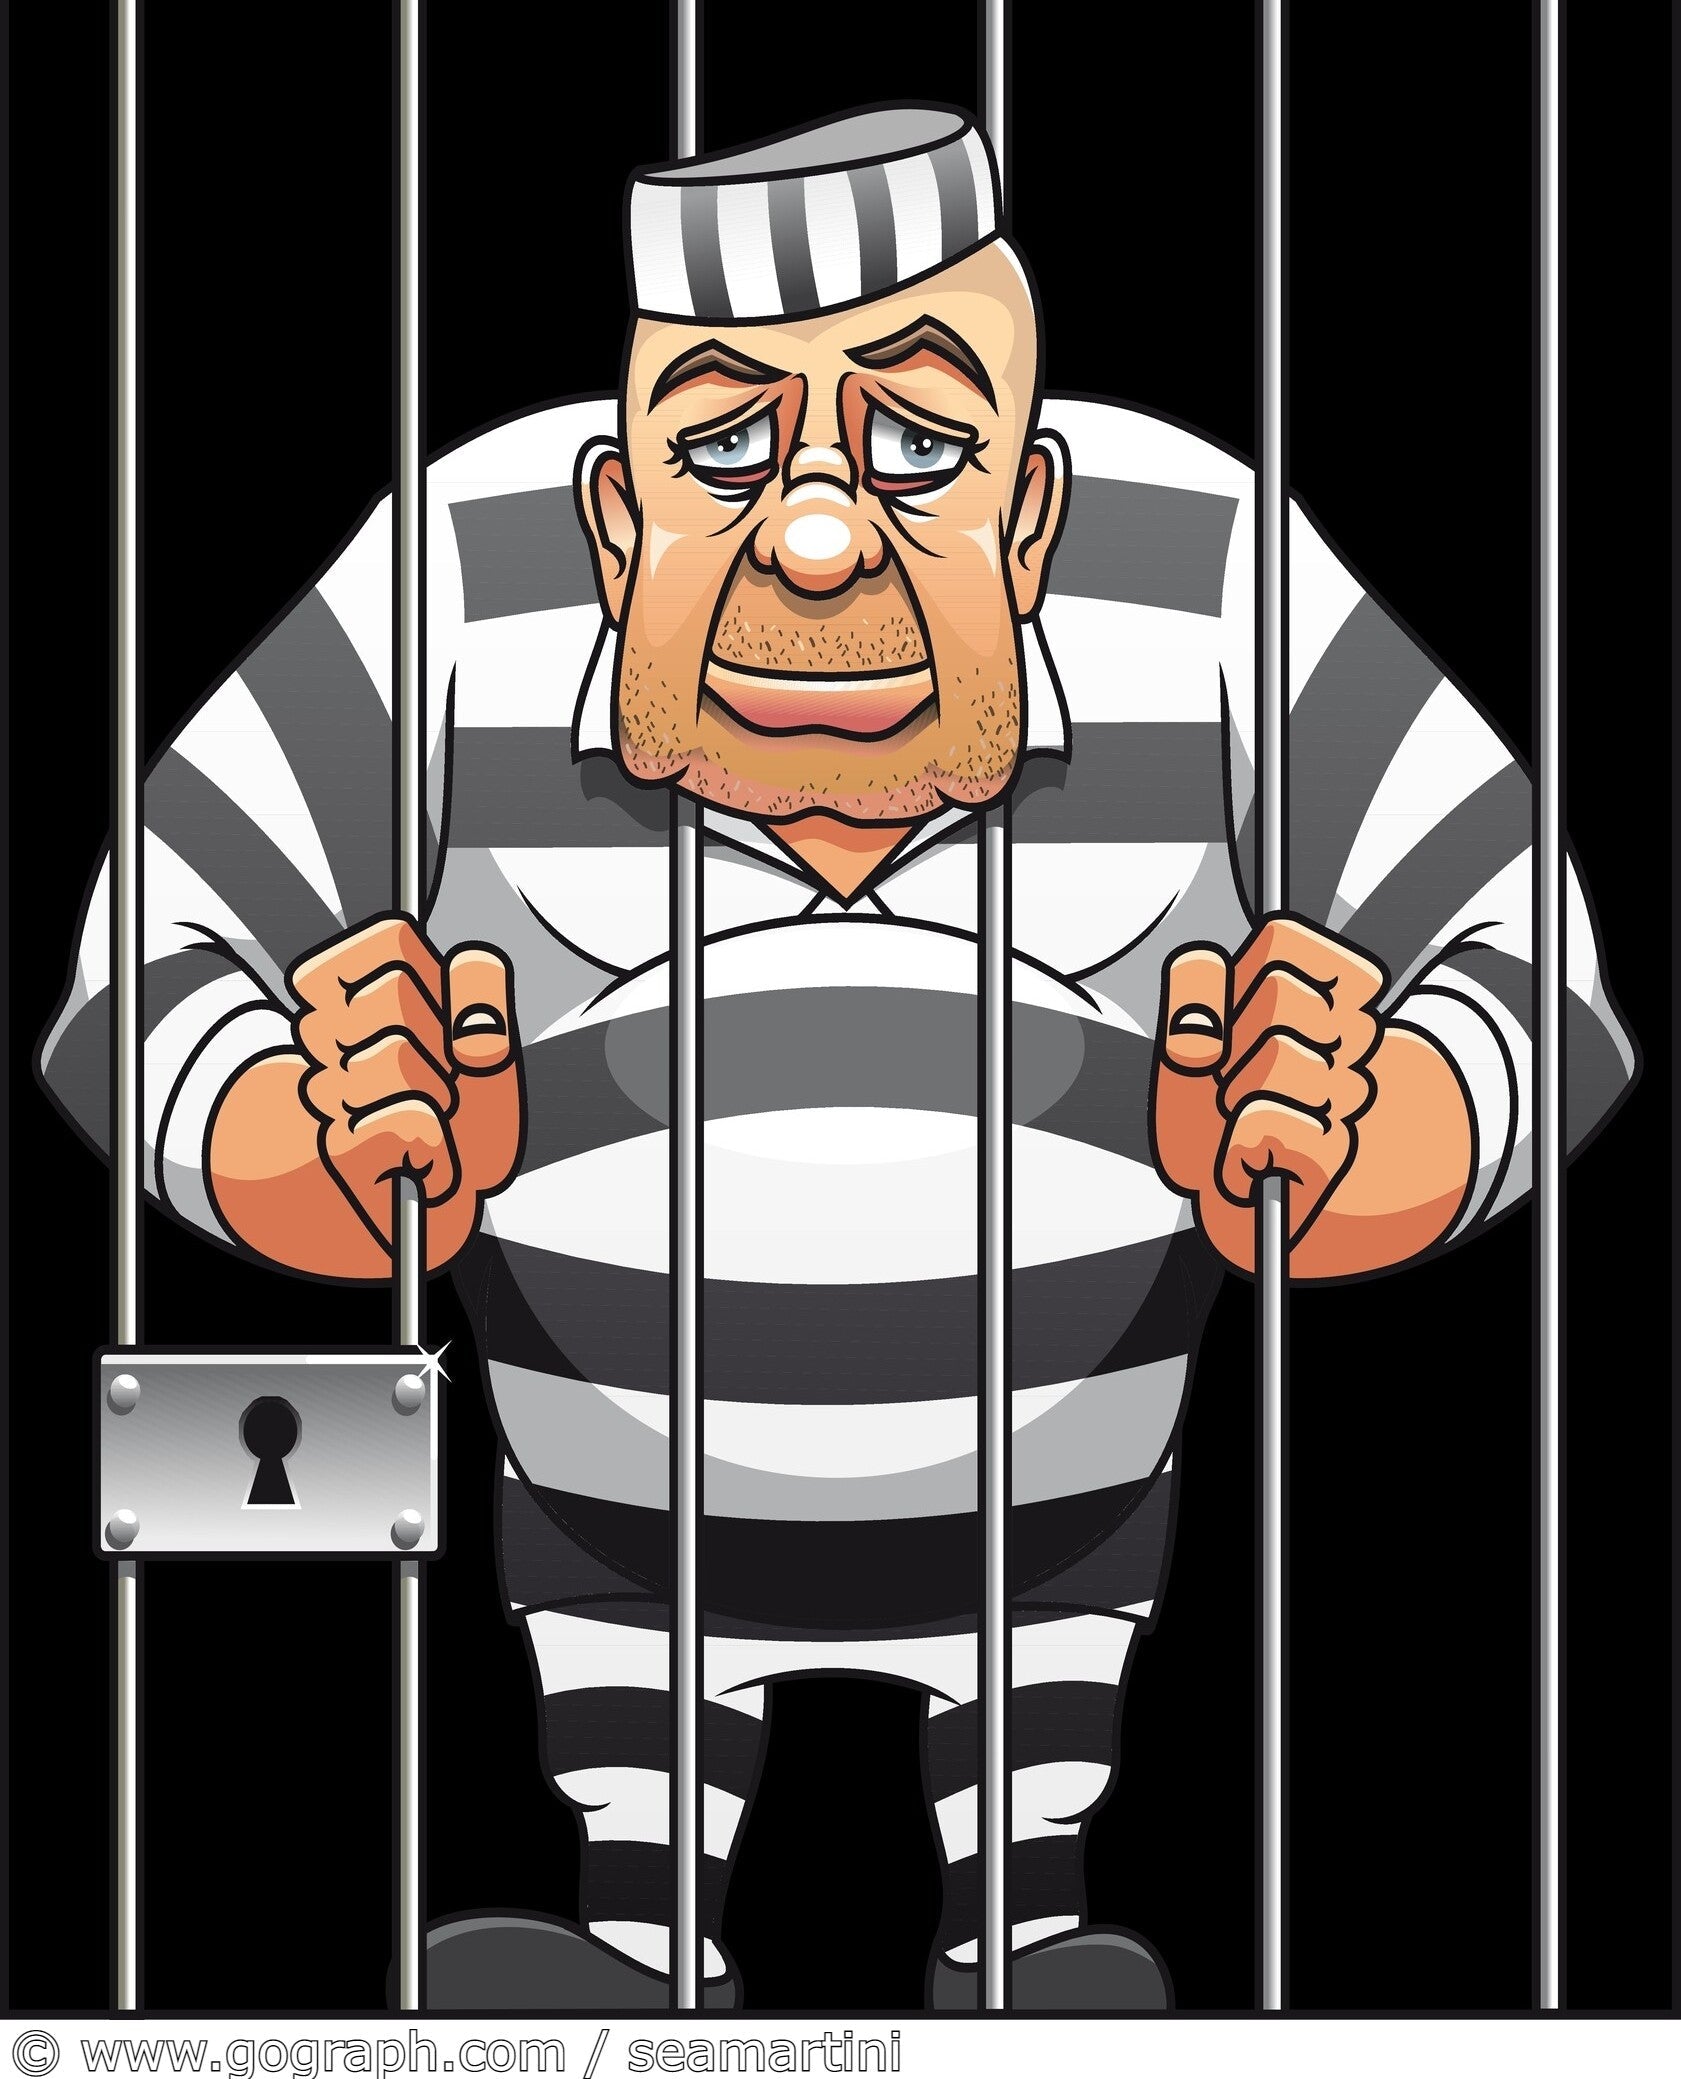 Cartoon image of a captured prisoner